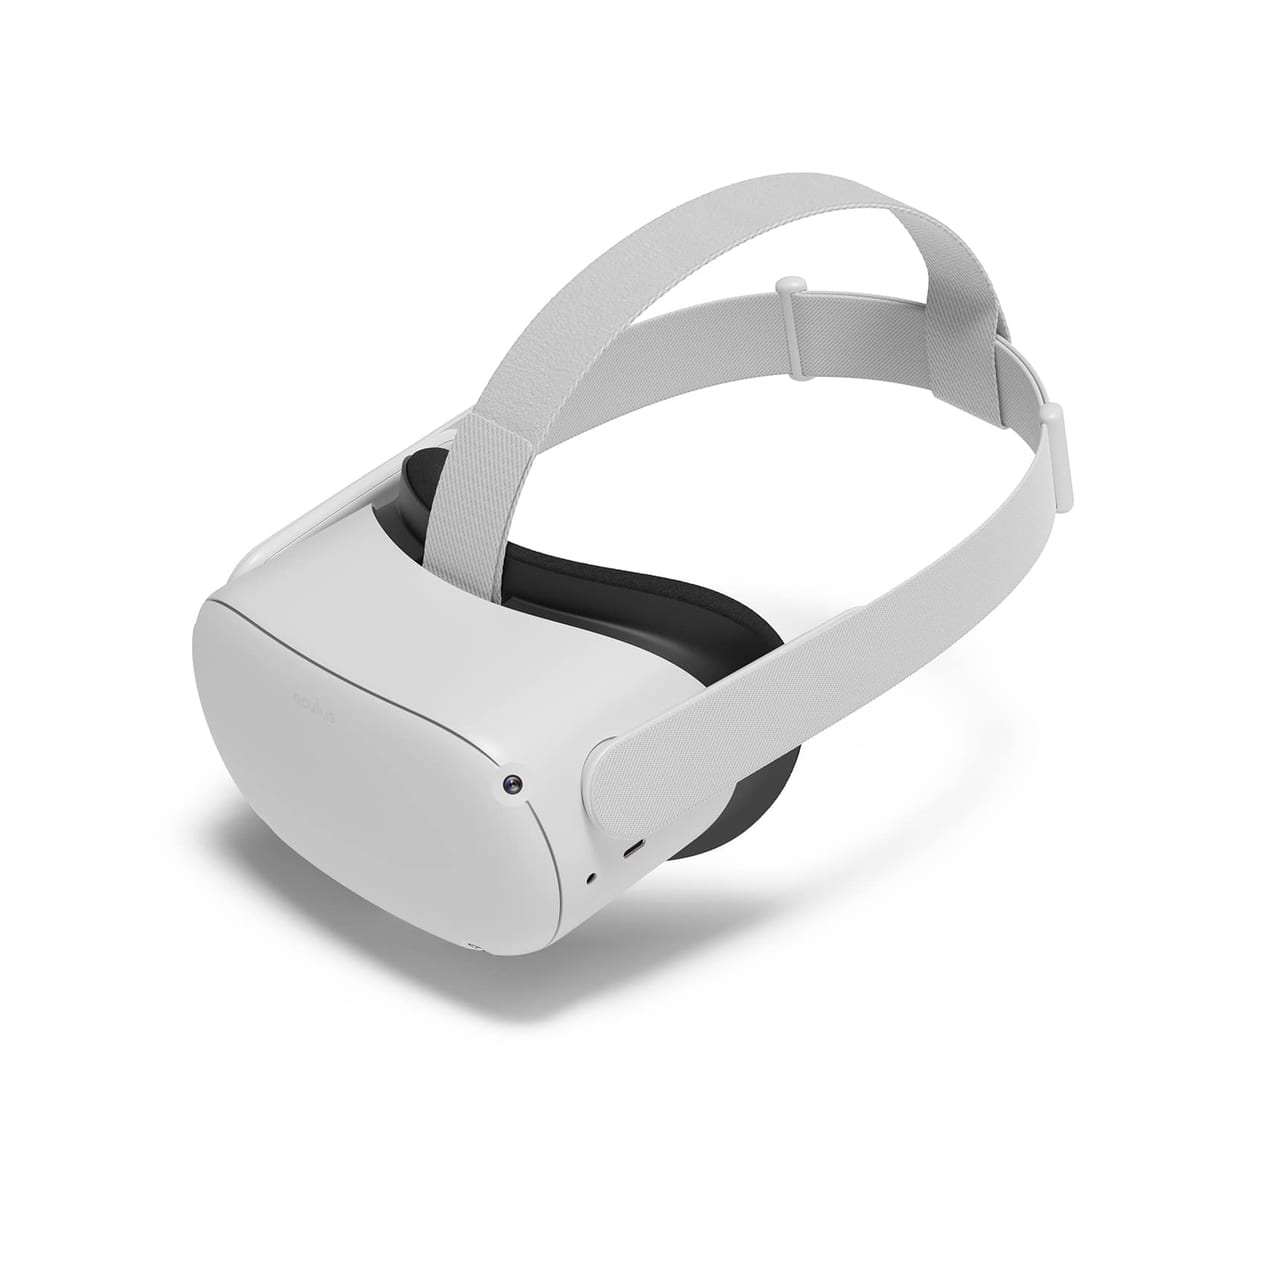 「Oculus Quest 2」が「ヘッドセット用接顔パーツ」による皮膚炎の報告を受け一時販売停止に。既存ユーザーには「シリコンカバー」を無償交換へ_002